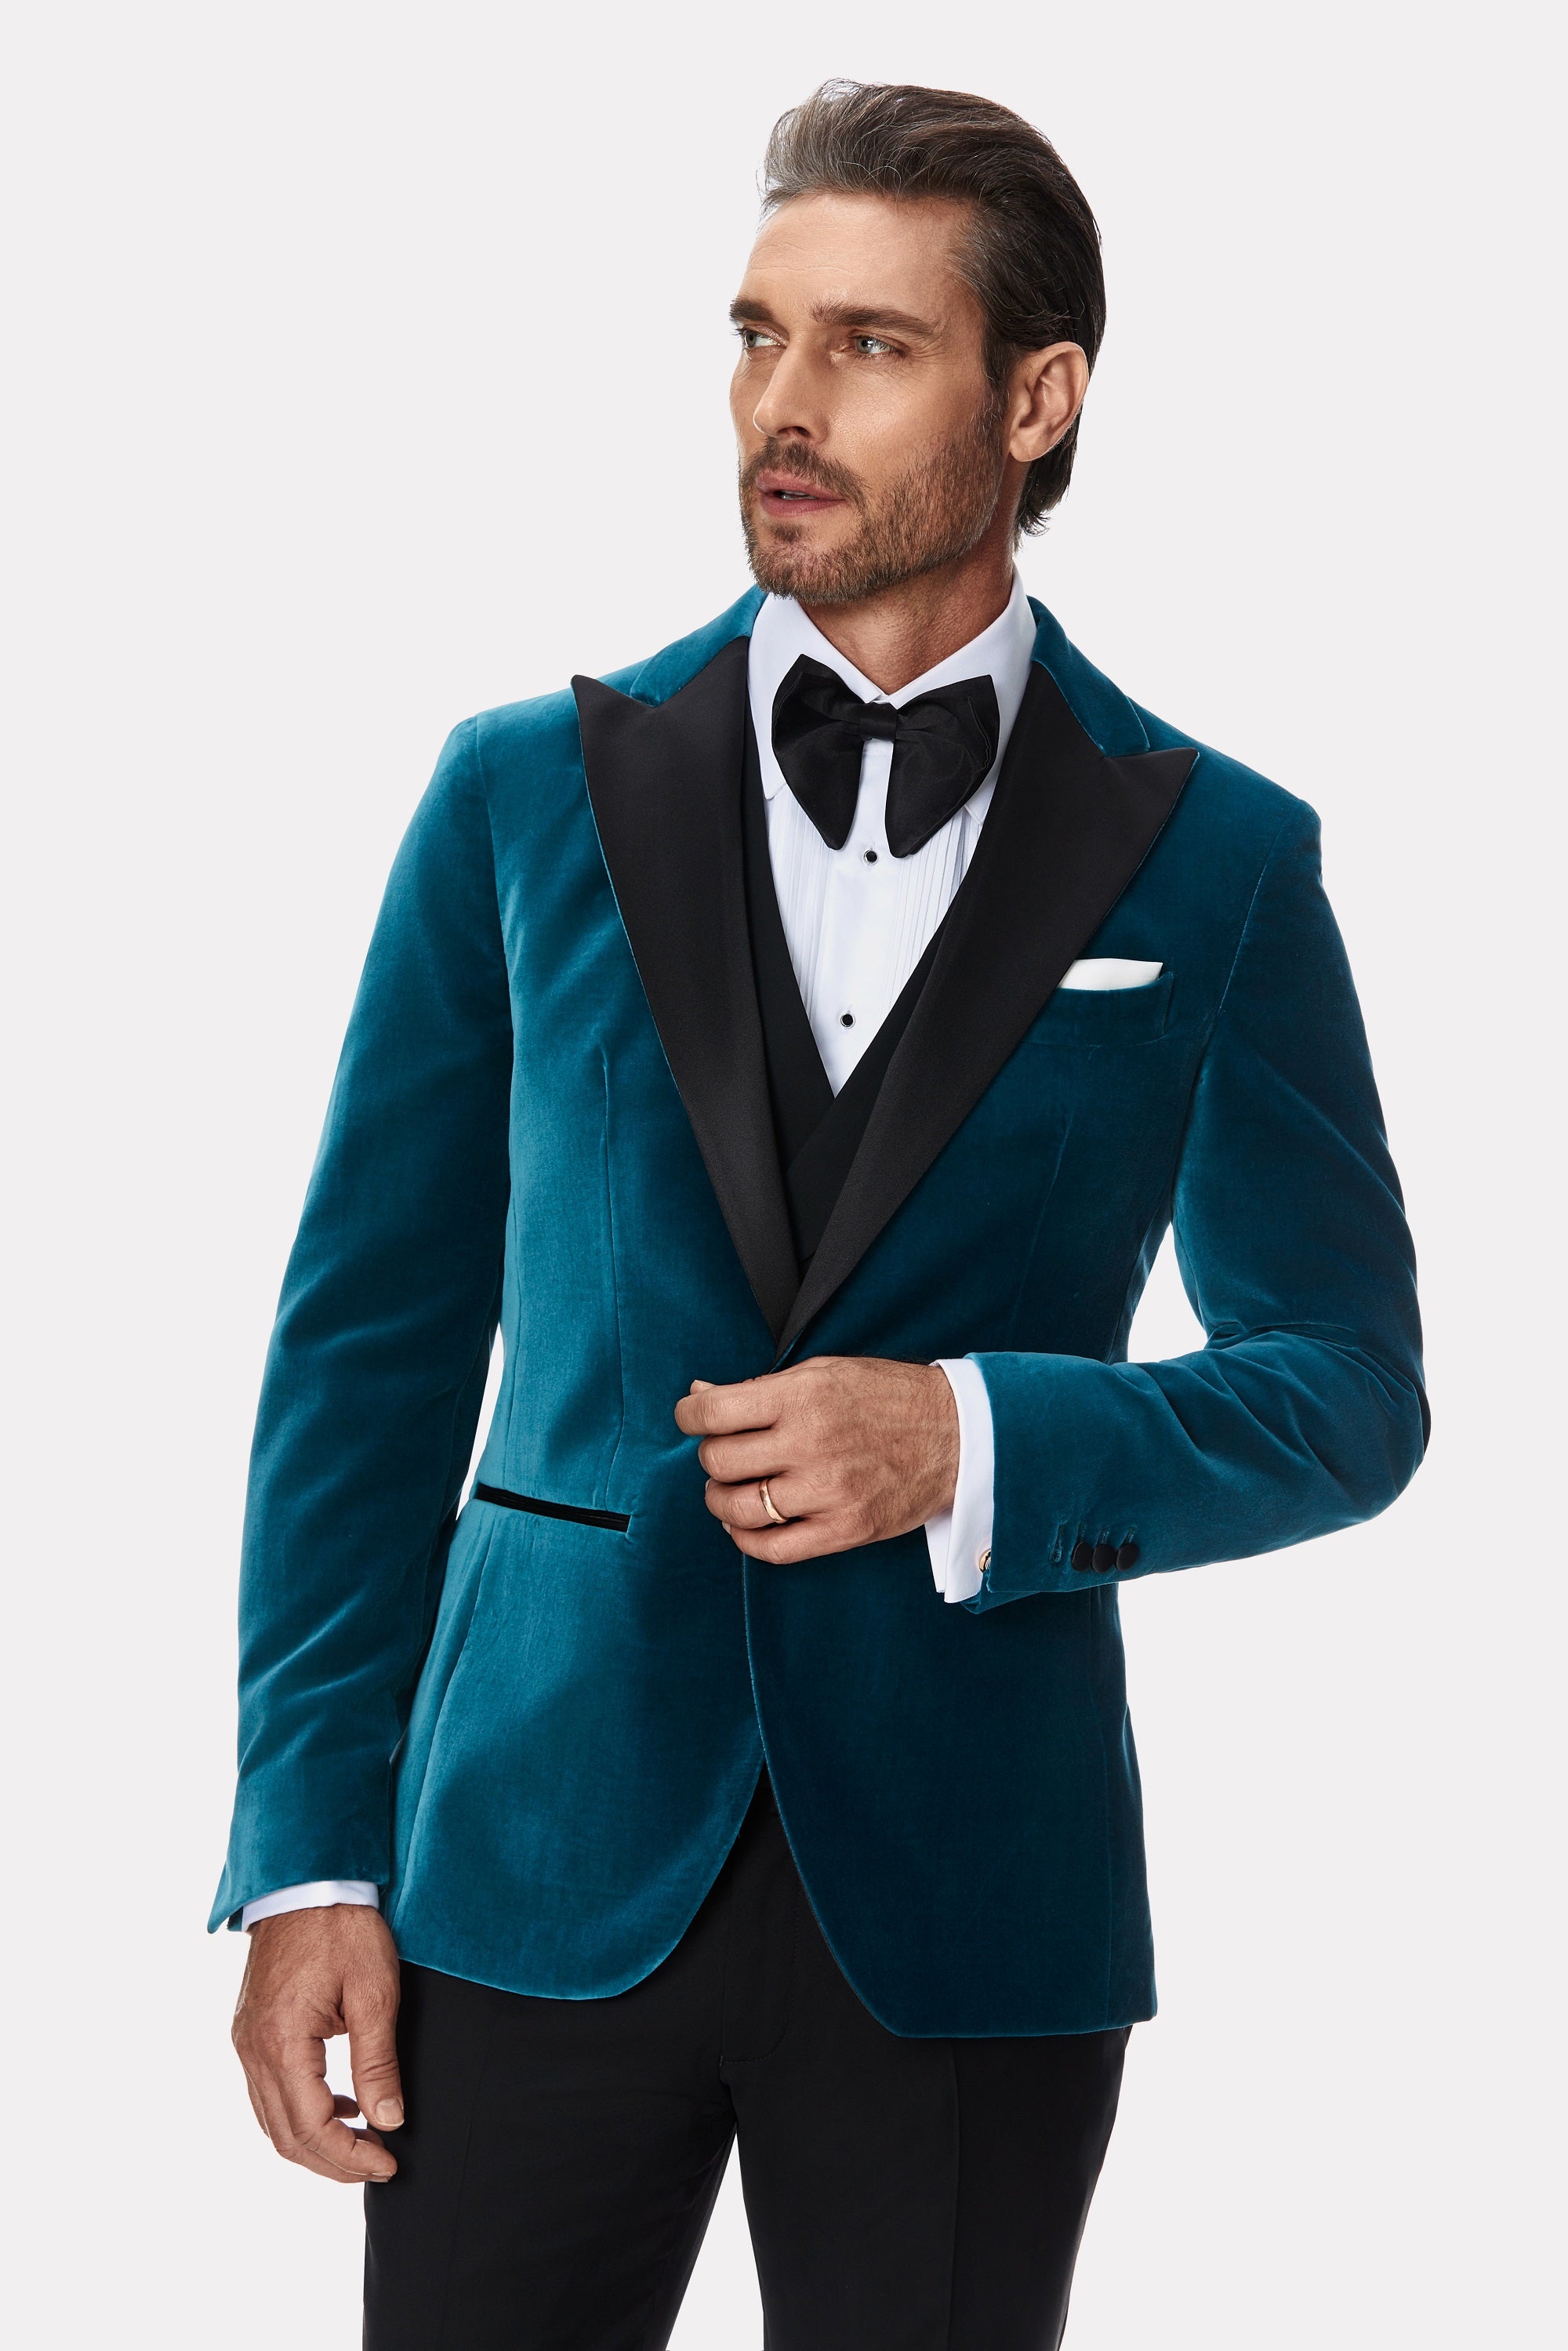 Turquoise velvet tuxedo jacket